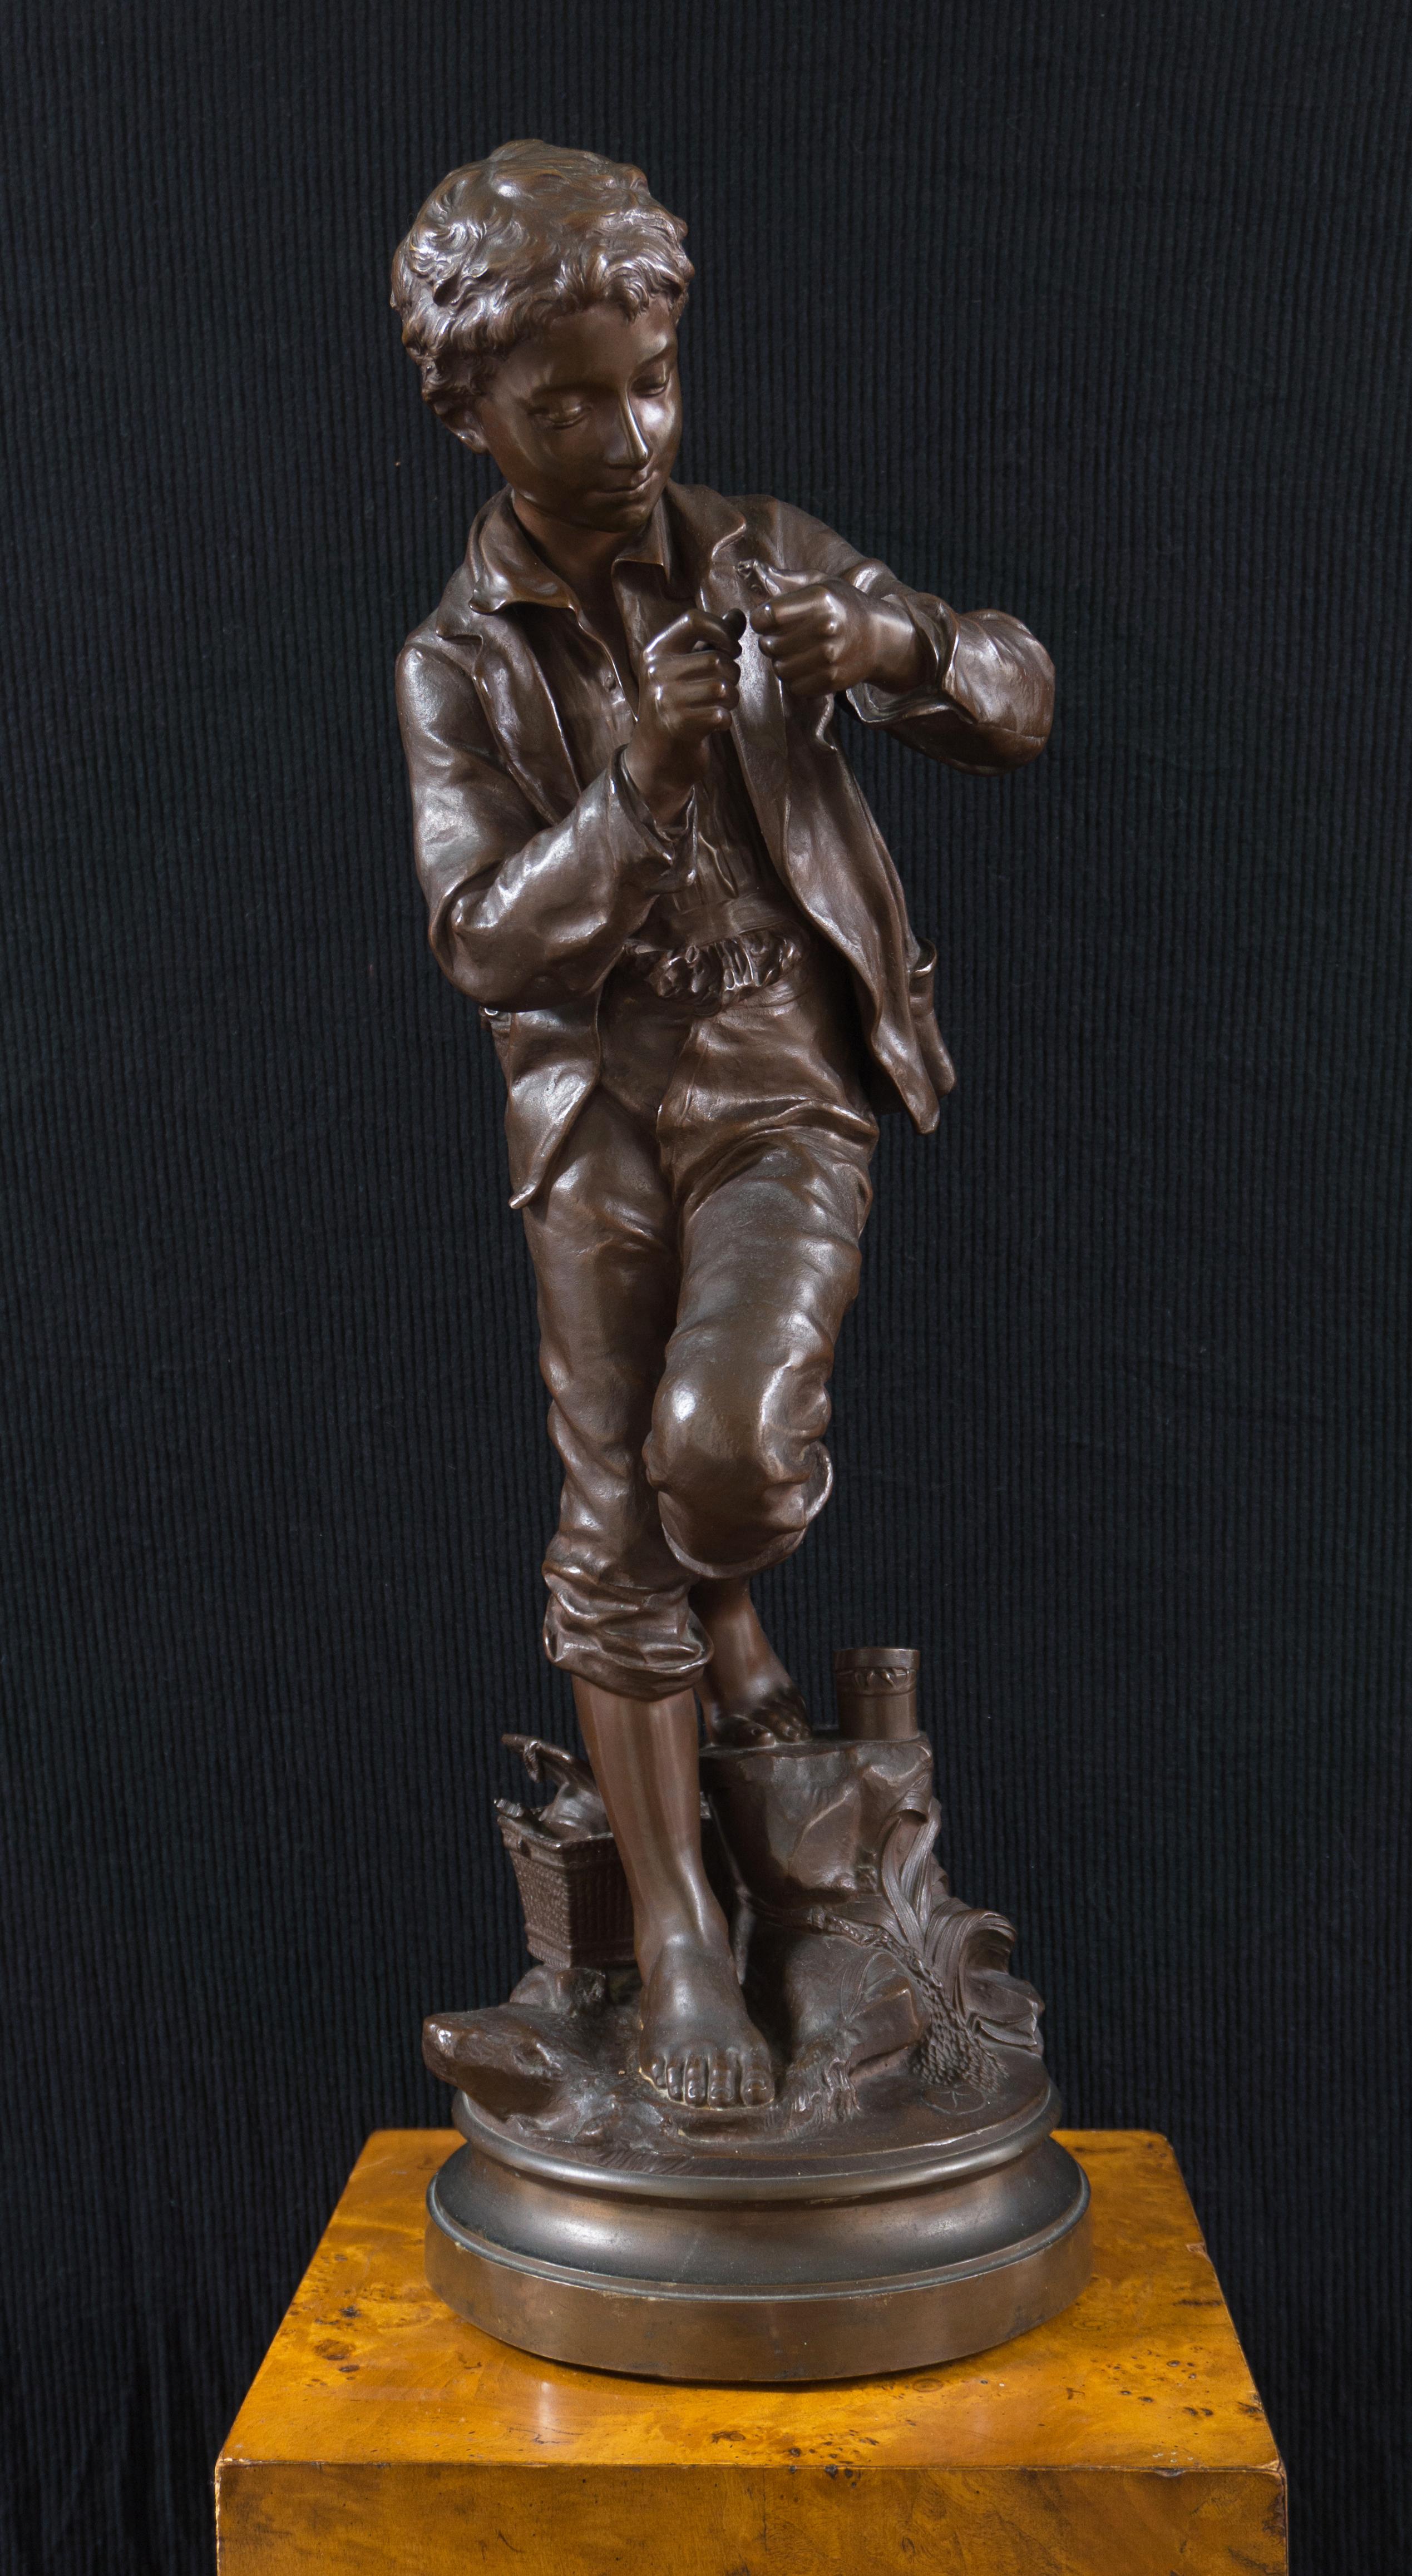 Figurative Sculpture Comte Eugene D'Astanieres - The Fisher Boy", grand bronze, Médaille d'honneur, Exposition universelle de Paris, 1900